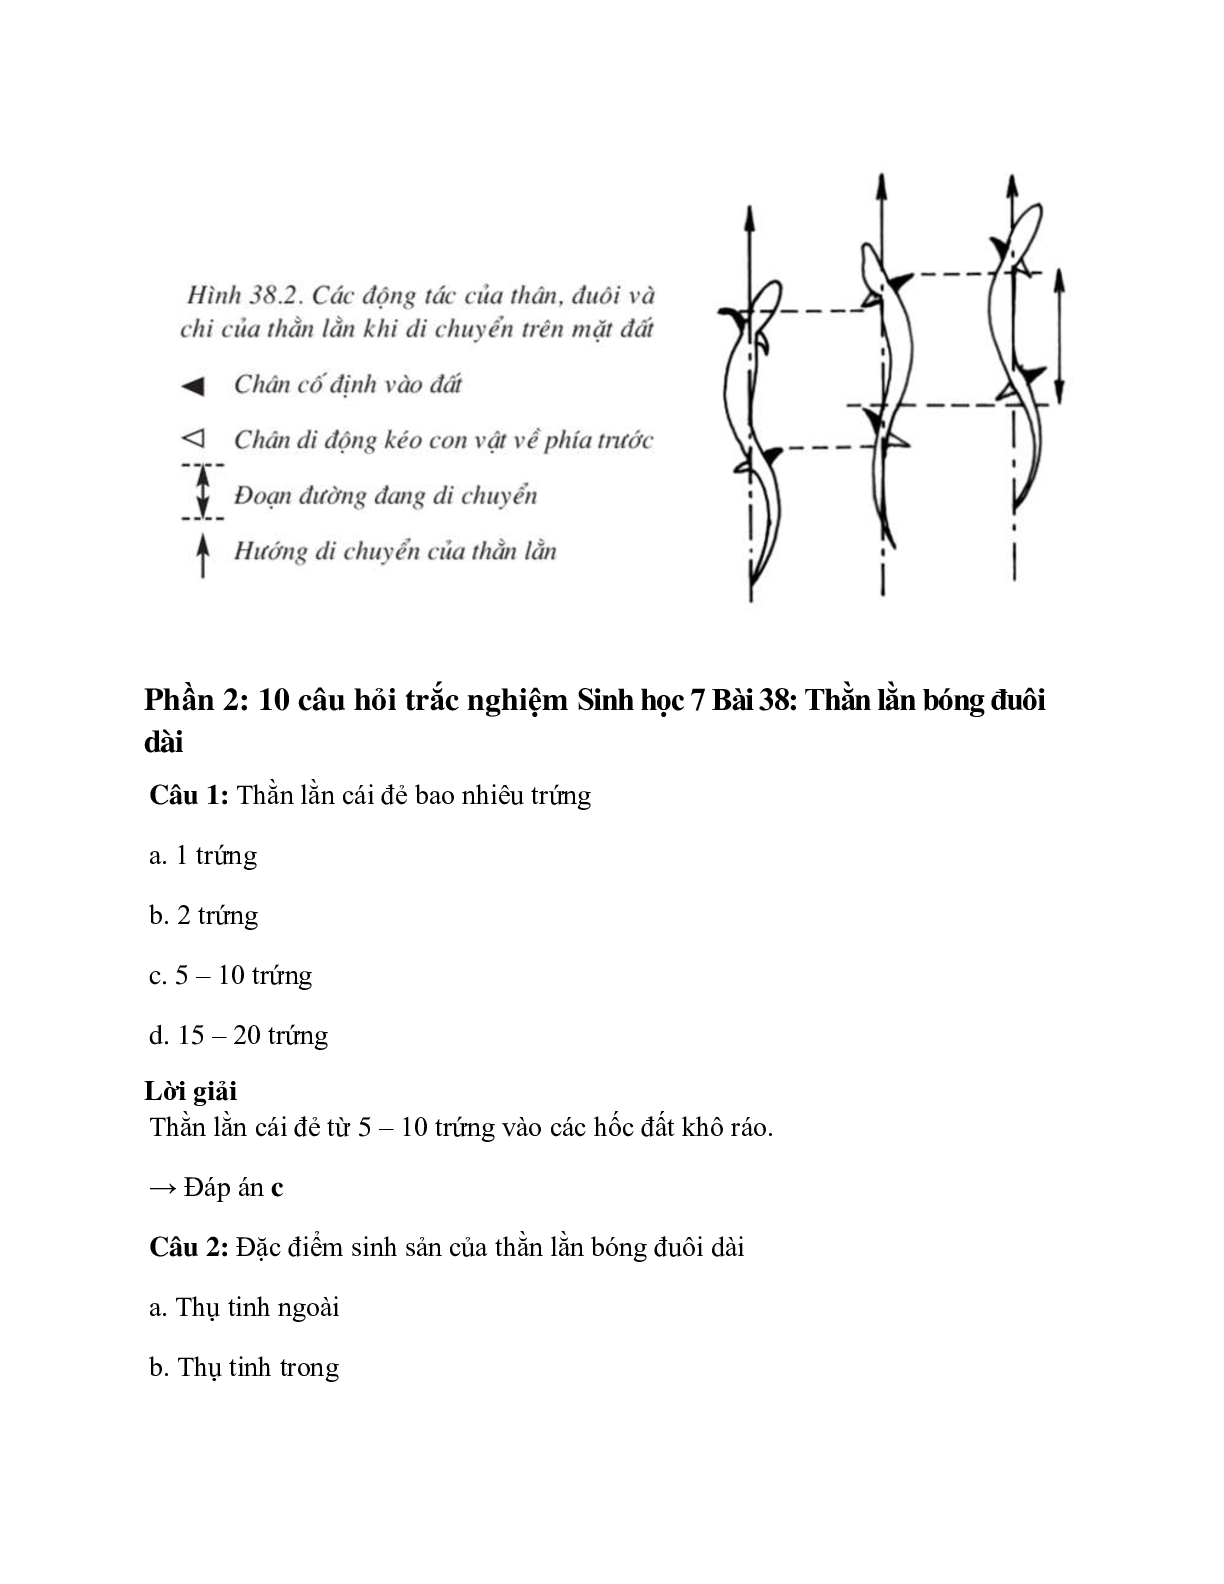 Sinh học 7 Bài 38 (Lý thuyết và trắc nghiệm): Thằn lằn bóng đuôi dài (trang 6)